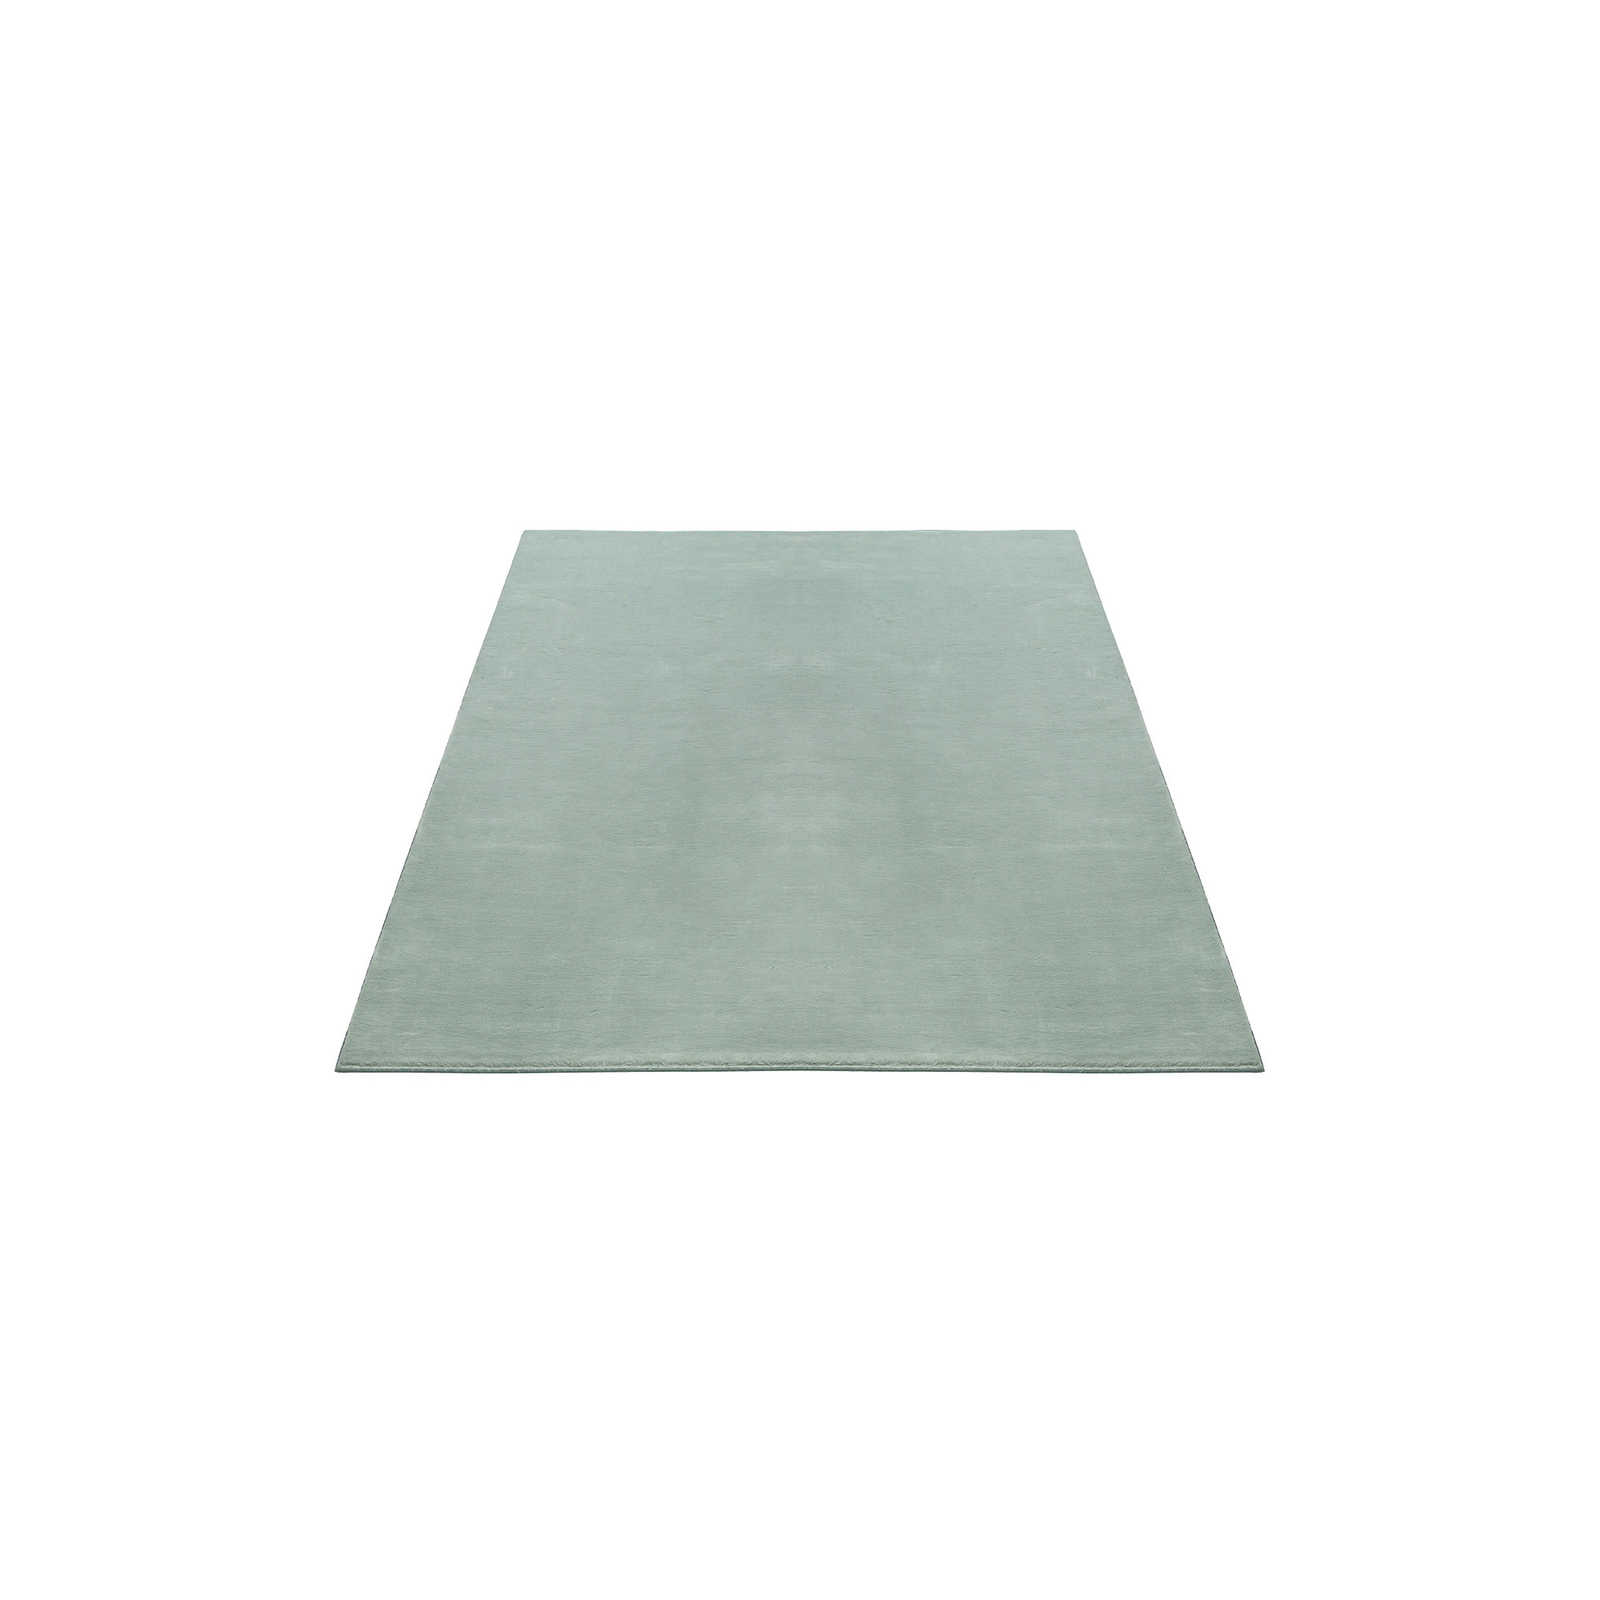 Zacht hoogpolig tapijt in zachtgroen - 170 x 120 cm
